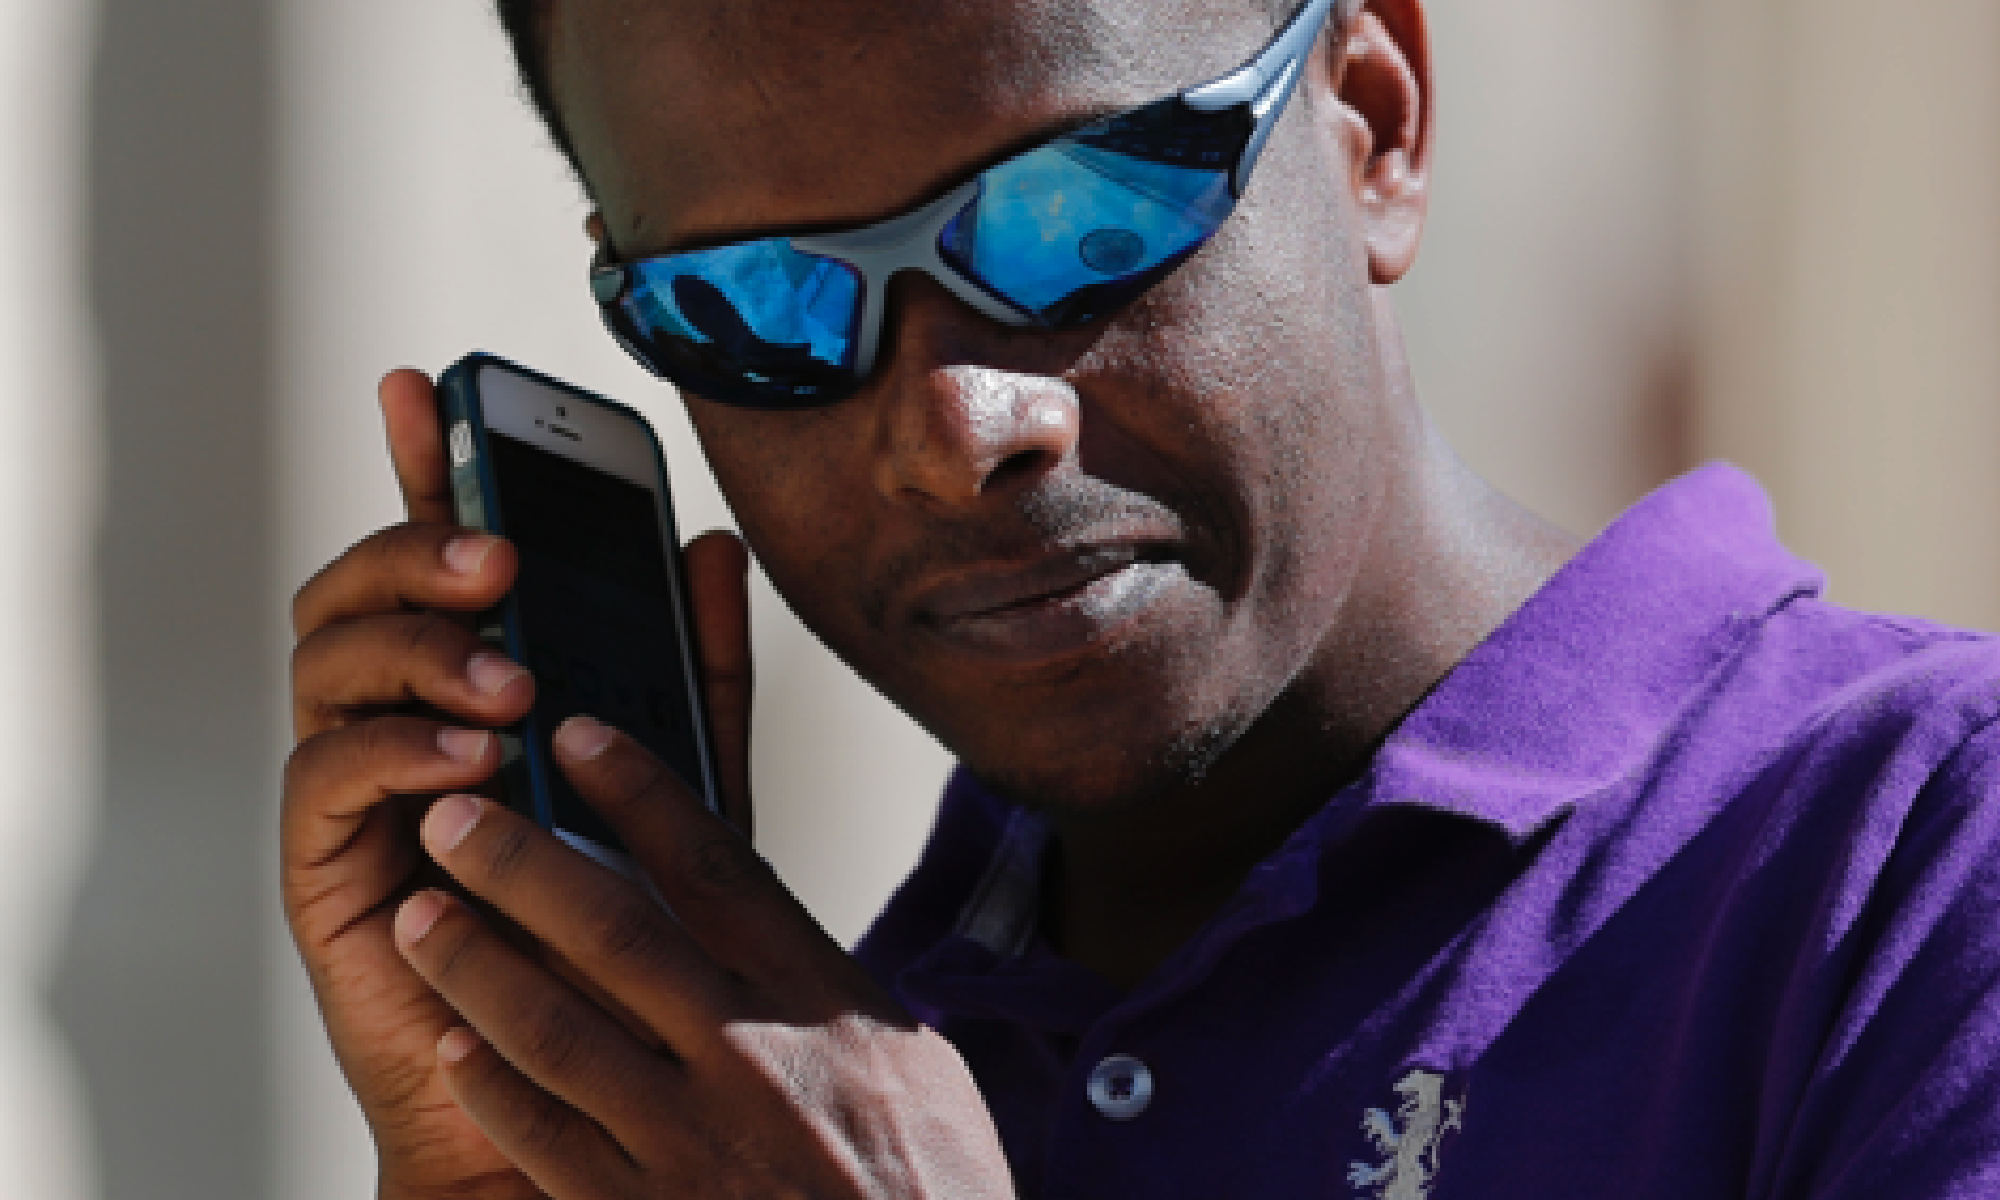 #PraCegoVer foto de um homem usando um celular com o leitor de tela ativado.